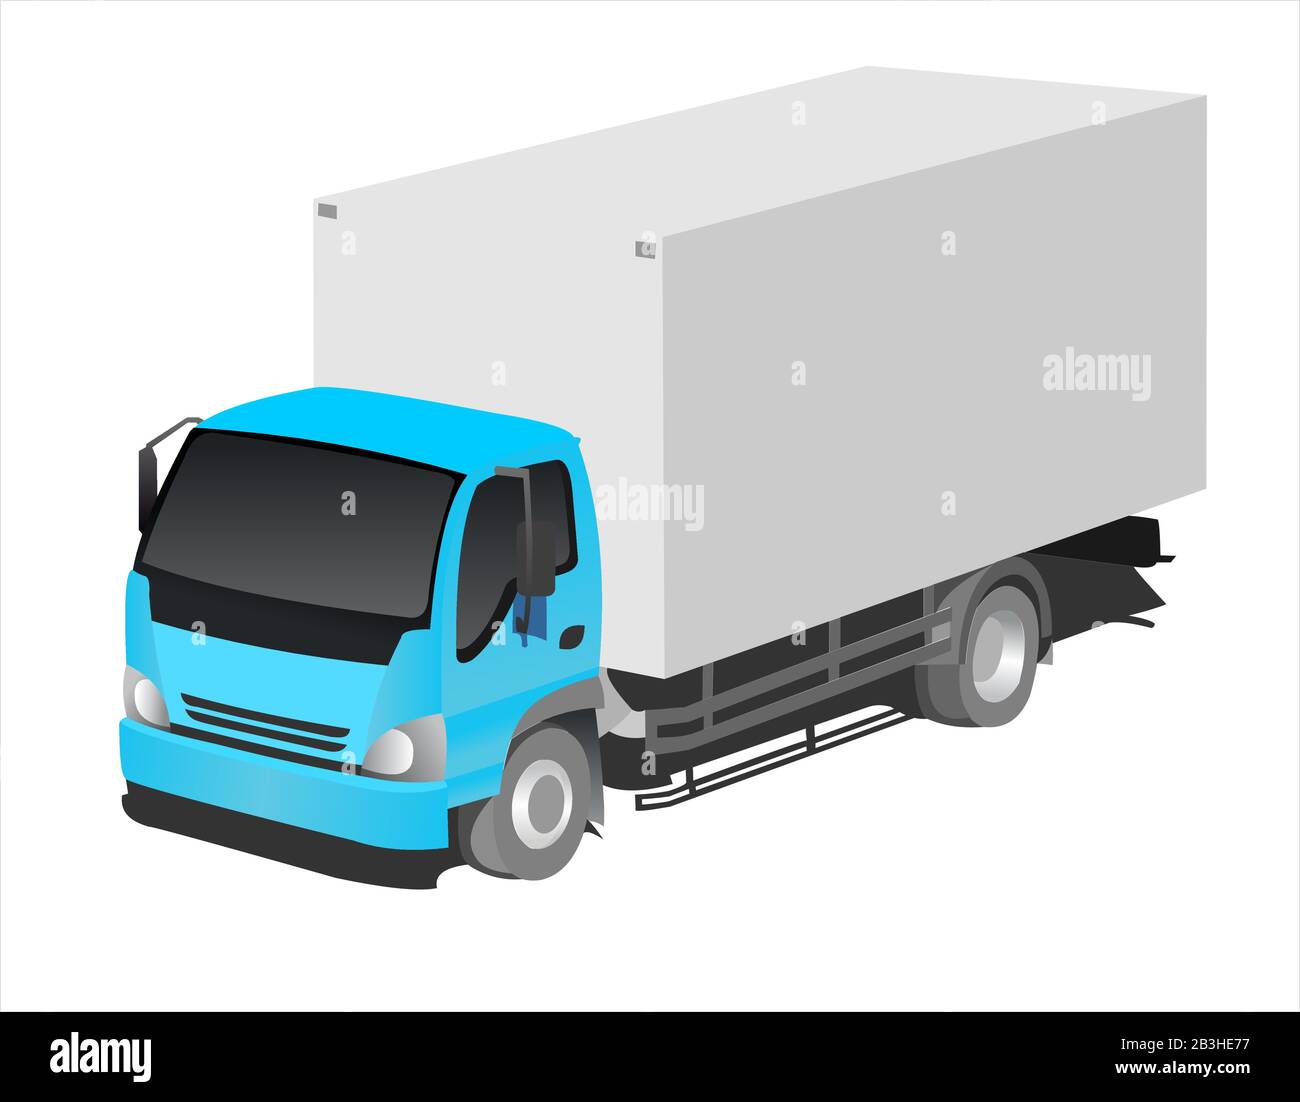 Camion, vue de trois quarts. Transport de fret. Illustration vectorielle plate moderne isolée. Illustration de Vecteur